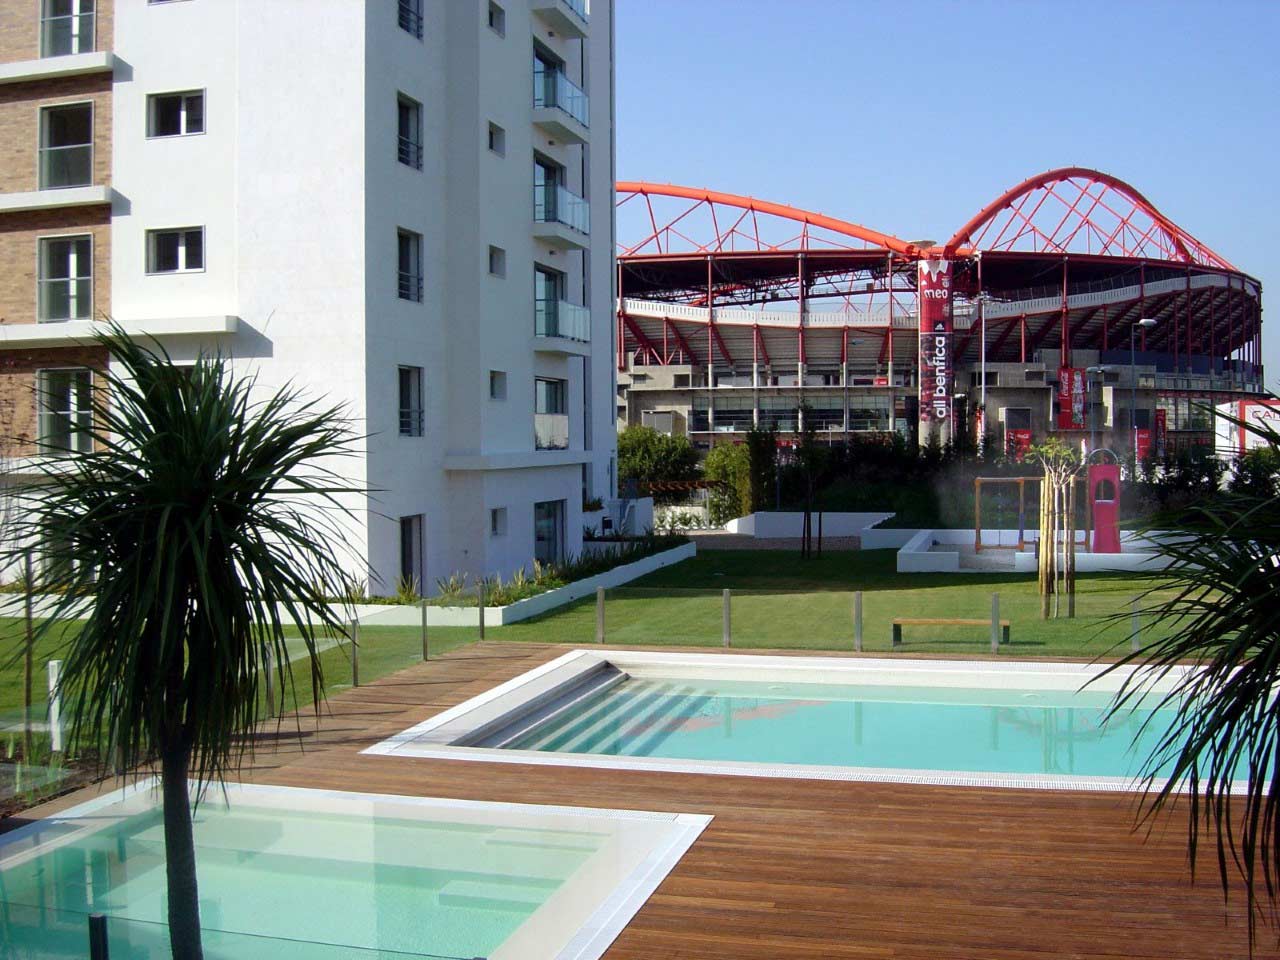 Benfica Stadium - Condomínio Privado